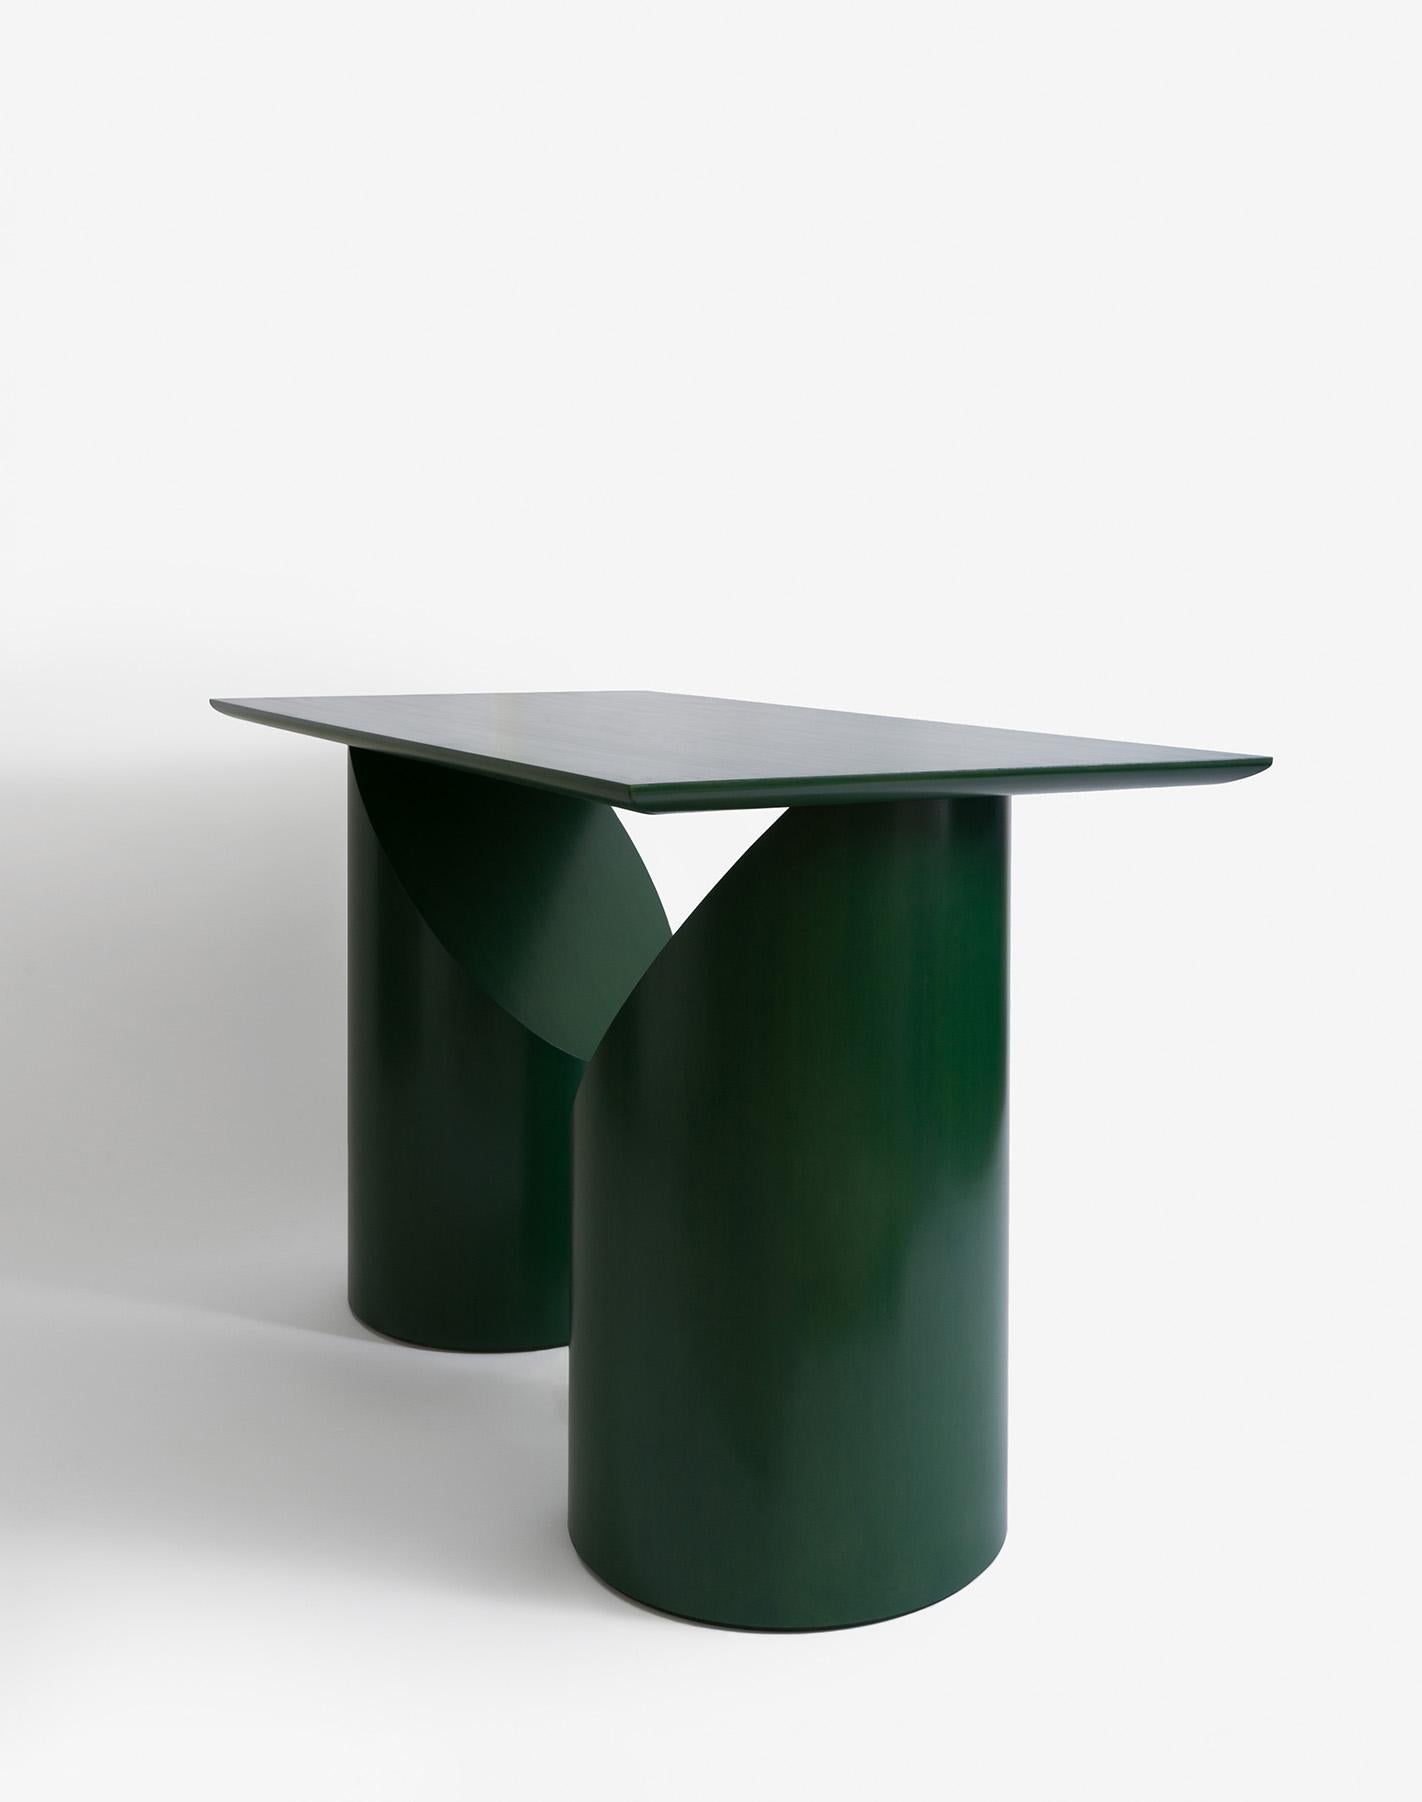 American Sculptural Green Wood Segment Desk by David Vu - Customizable For Sale